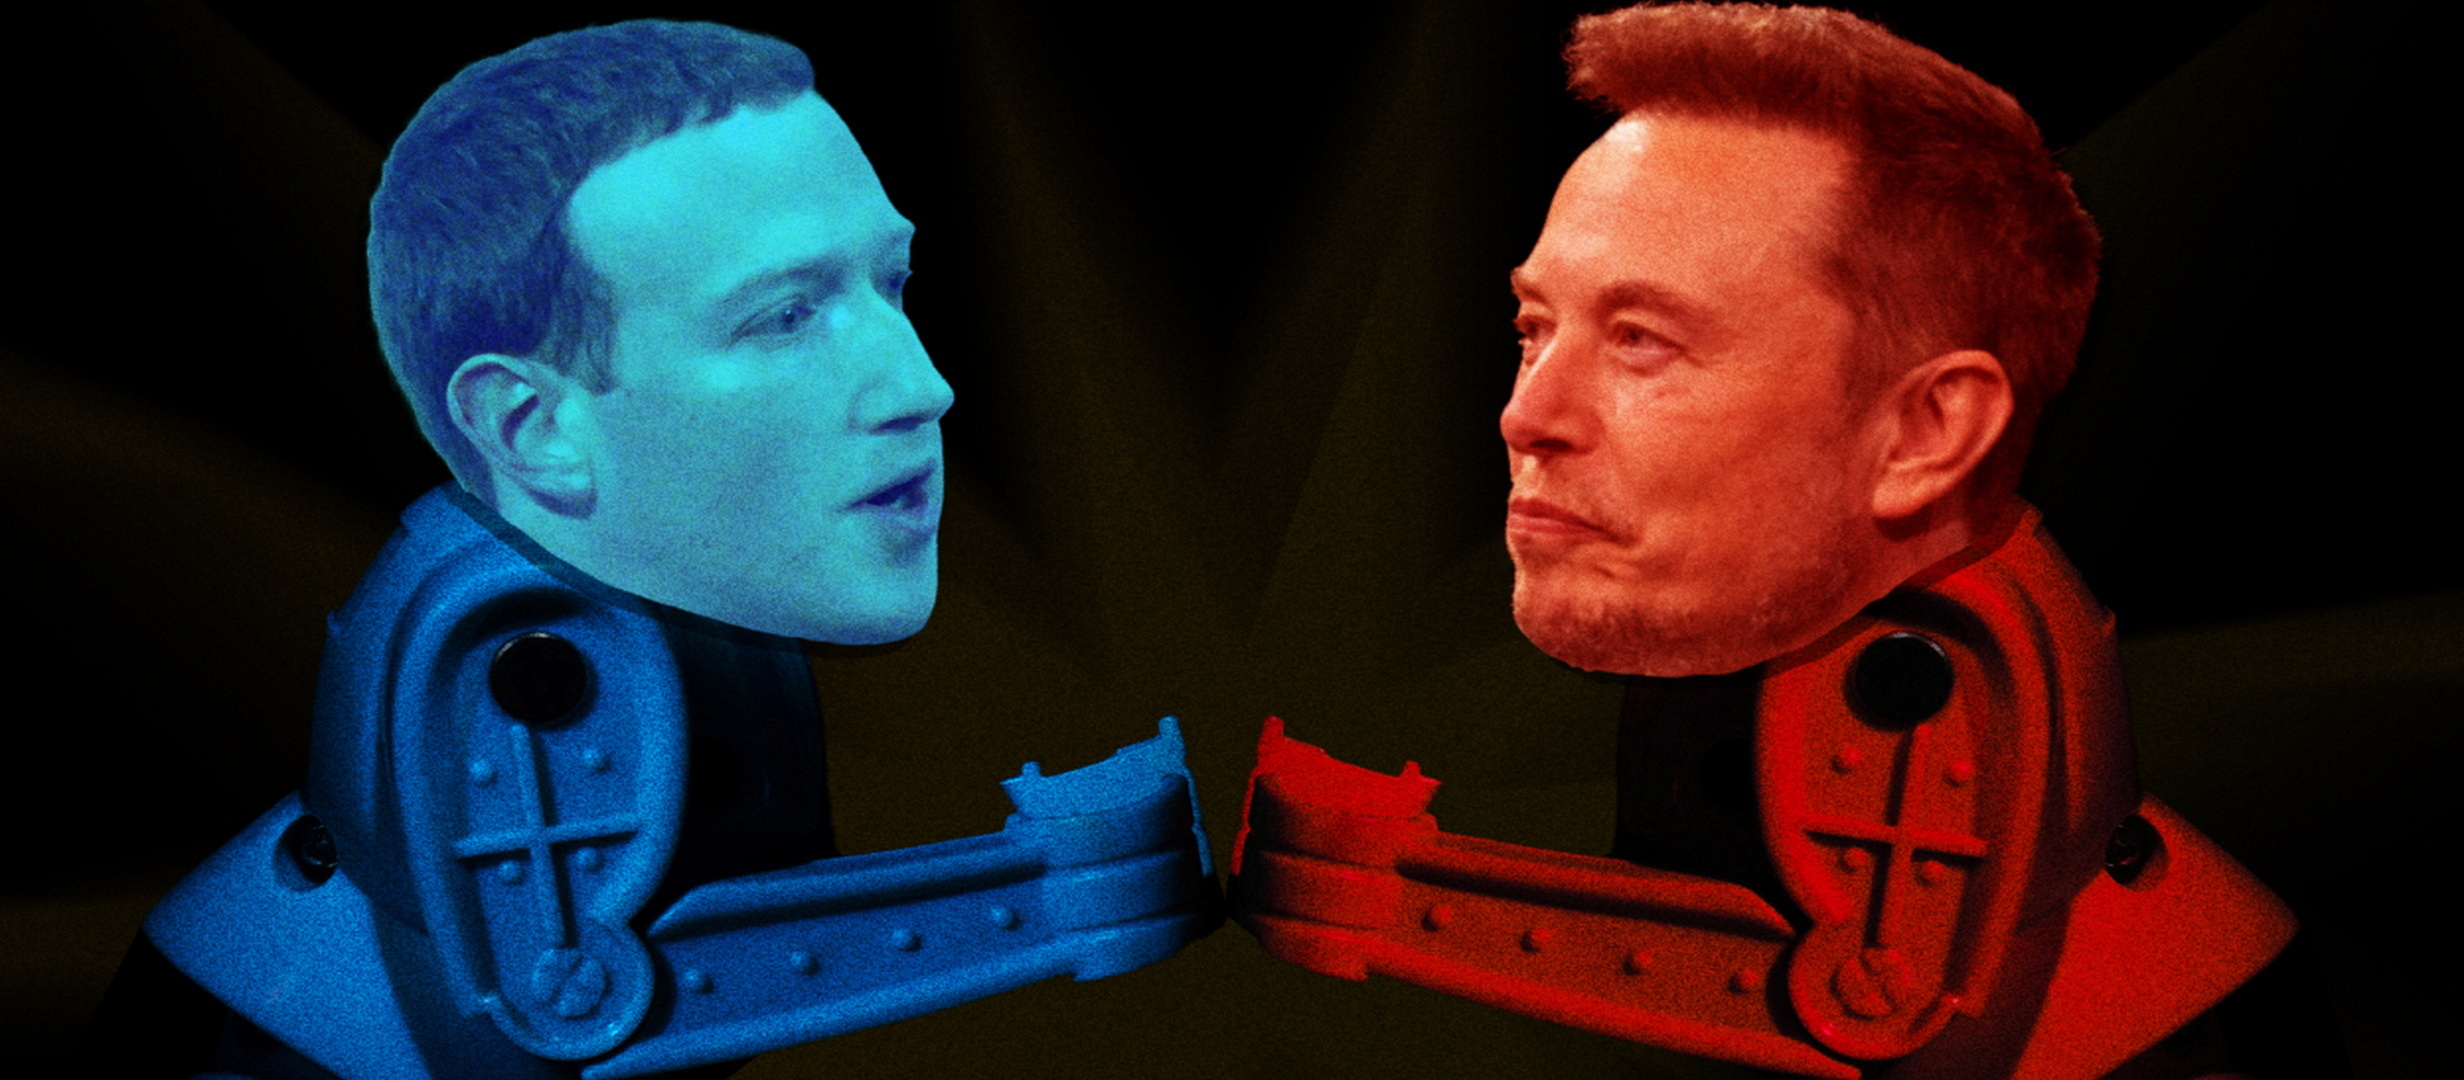 Zuckerberg vs Musk cine castiga? Pariuri si cote